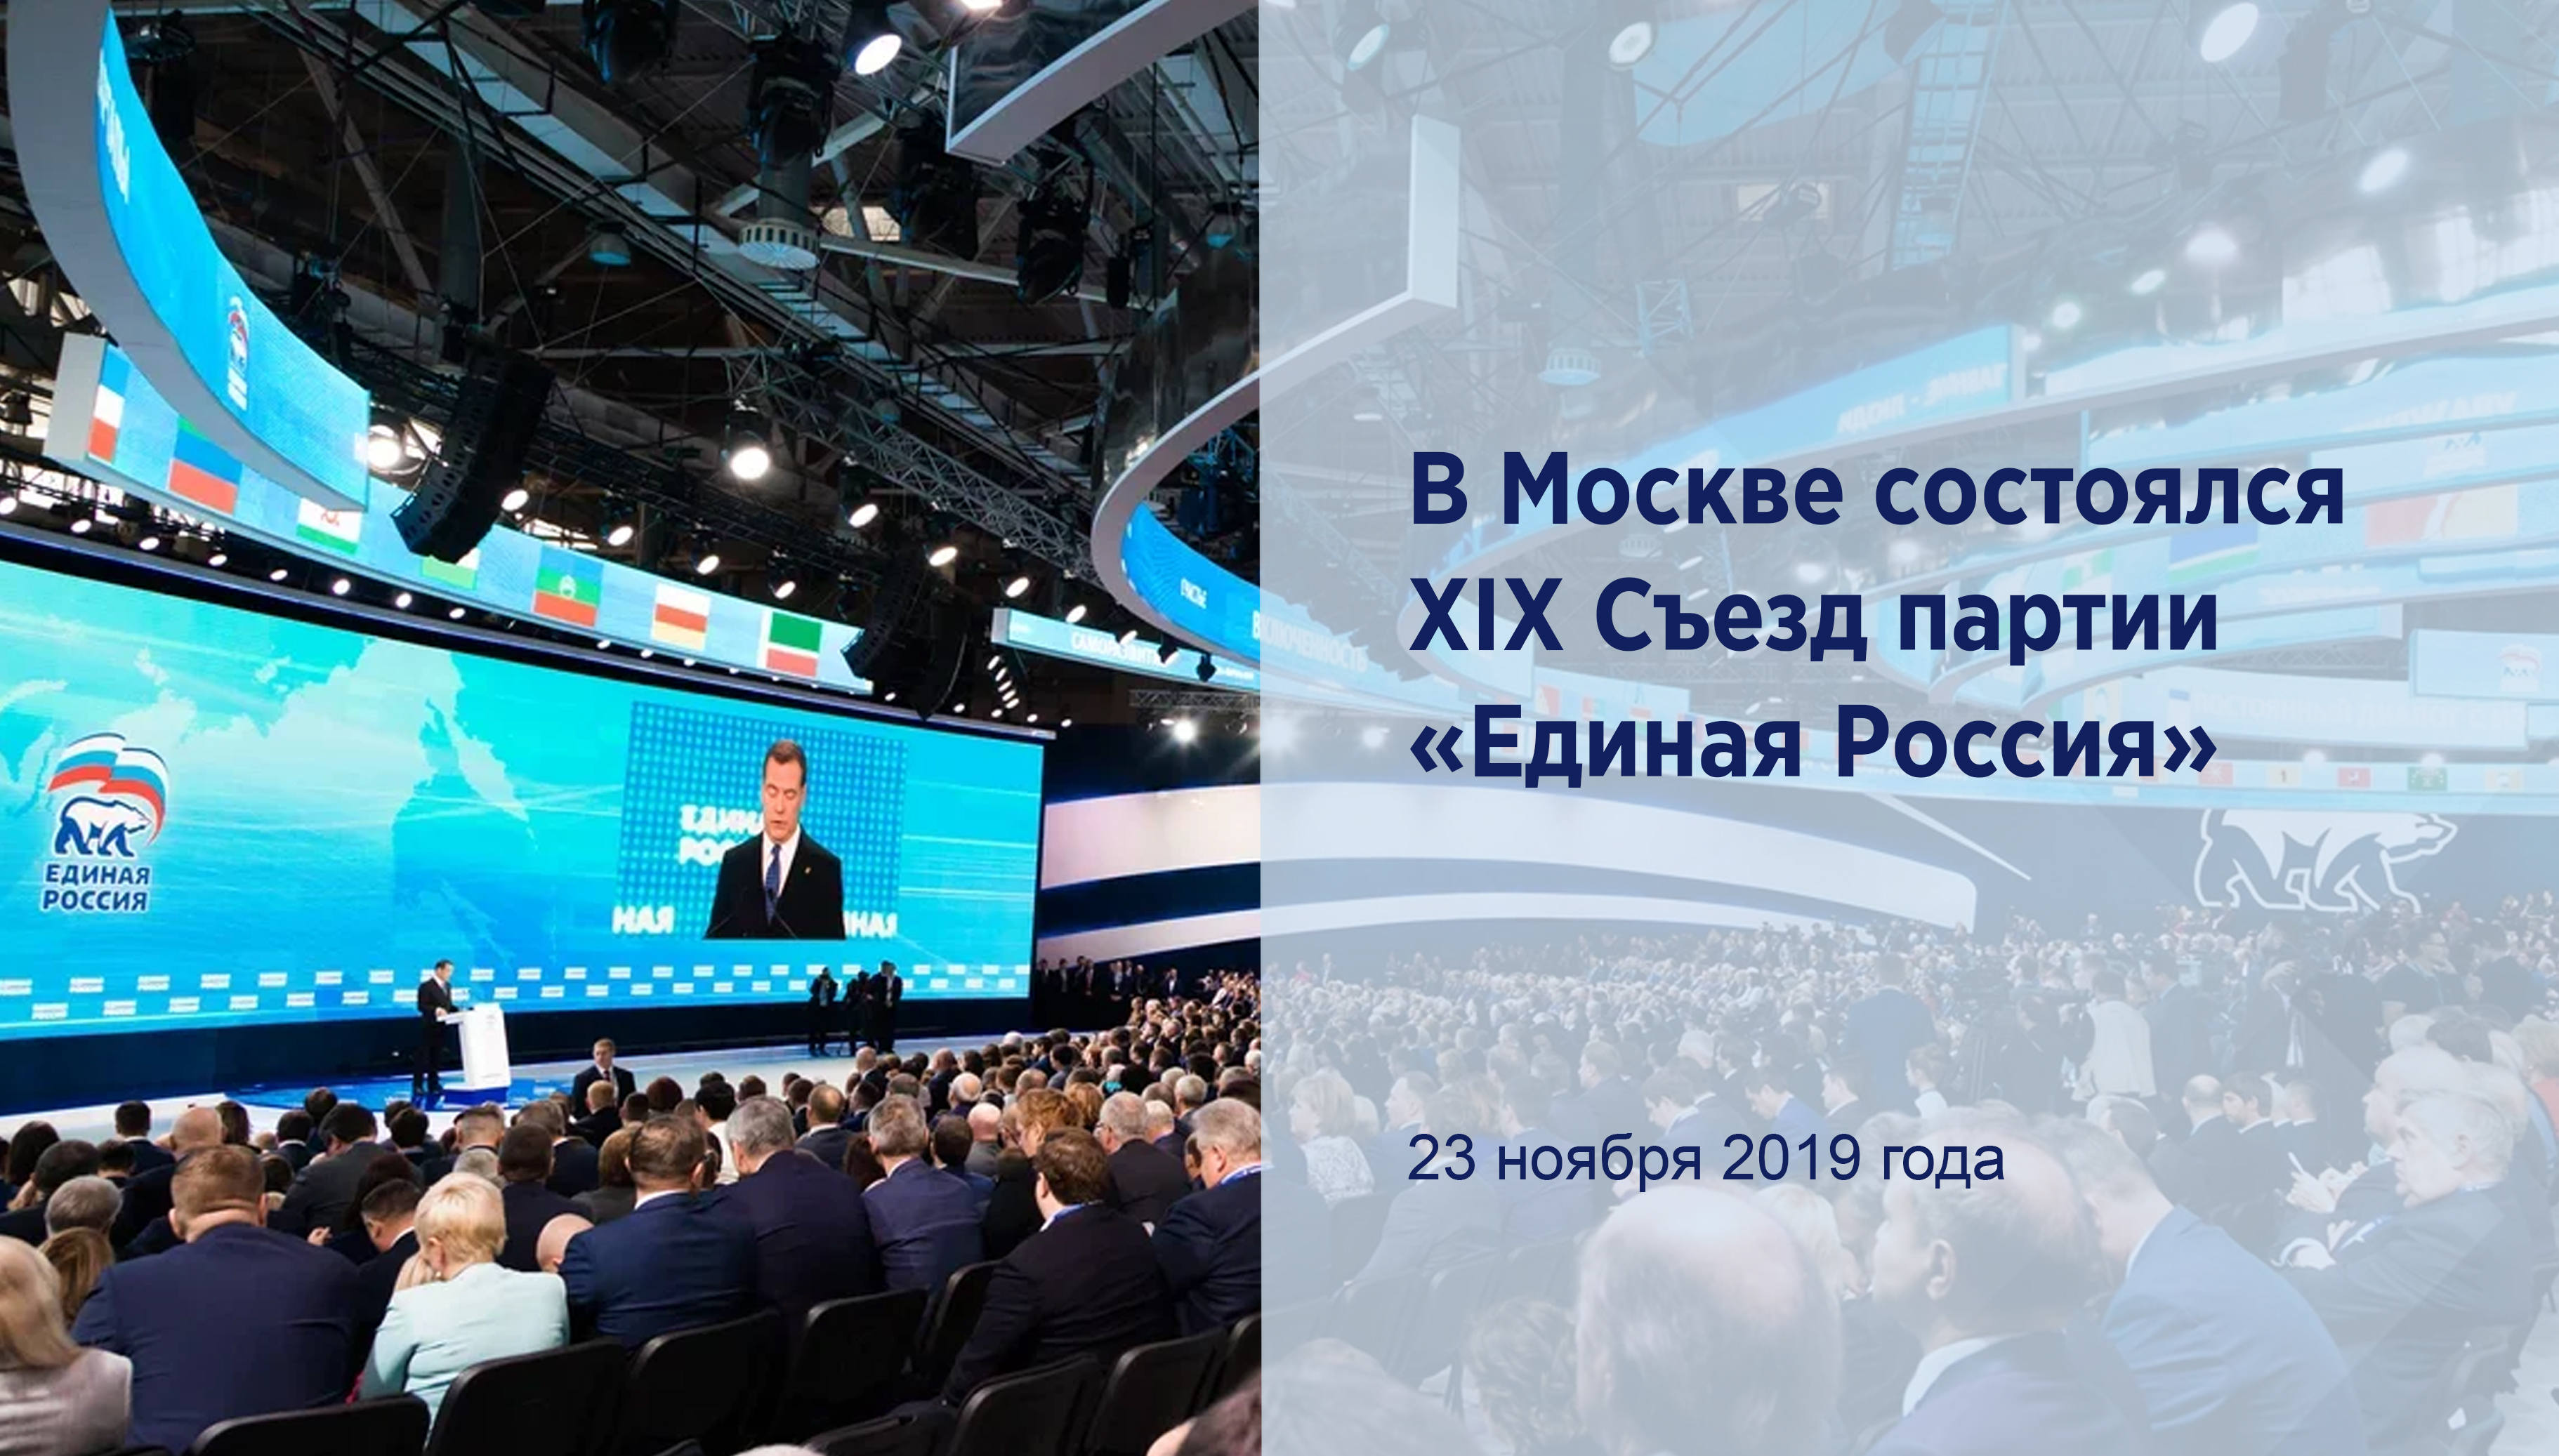 В Москве состоялся XIX Съезд партии
«Единая Россия»